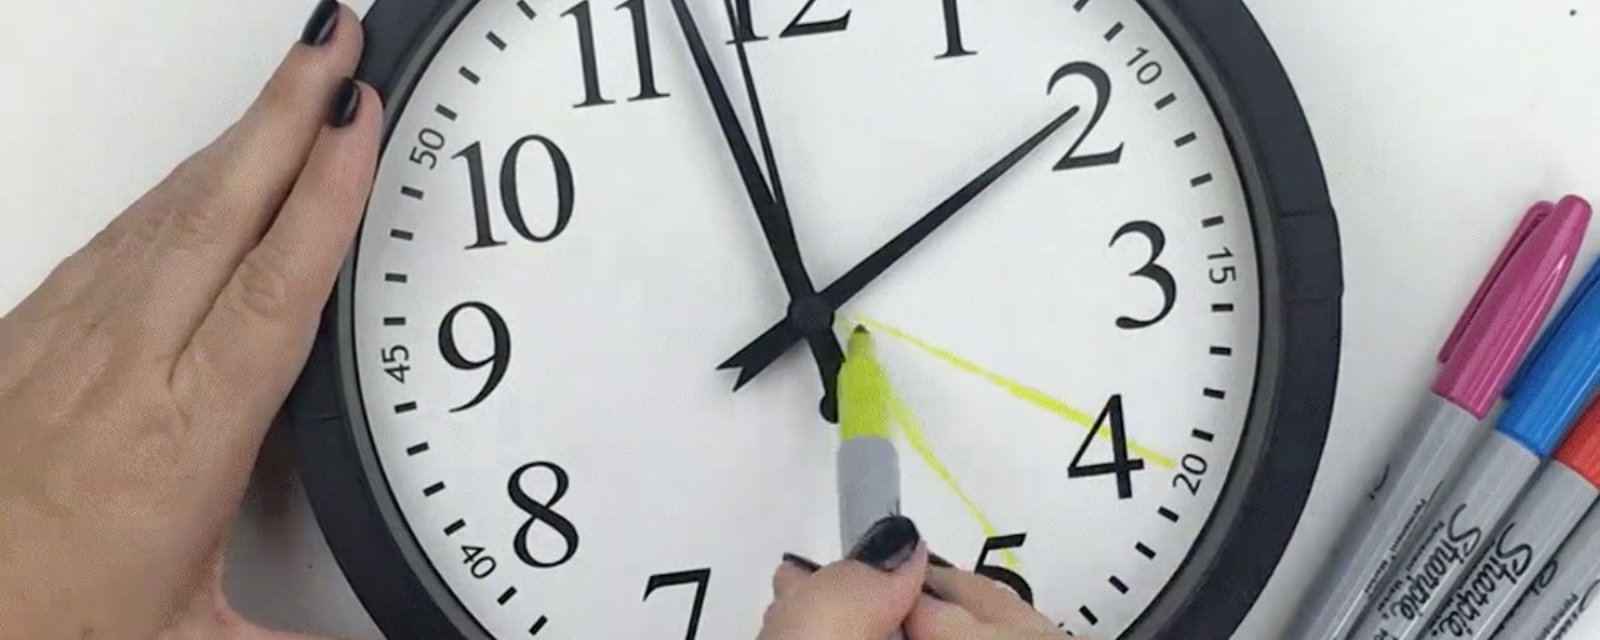 Elle colorie le fond d’une horloge avec des crayons: son idée a changé l’humeur dans la maison!